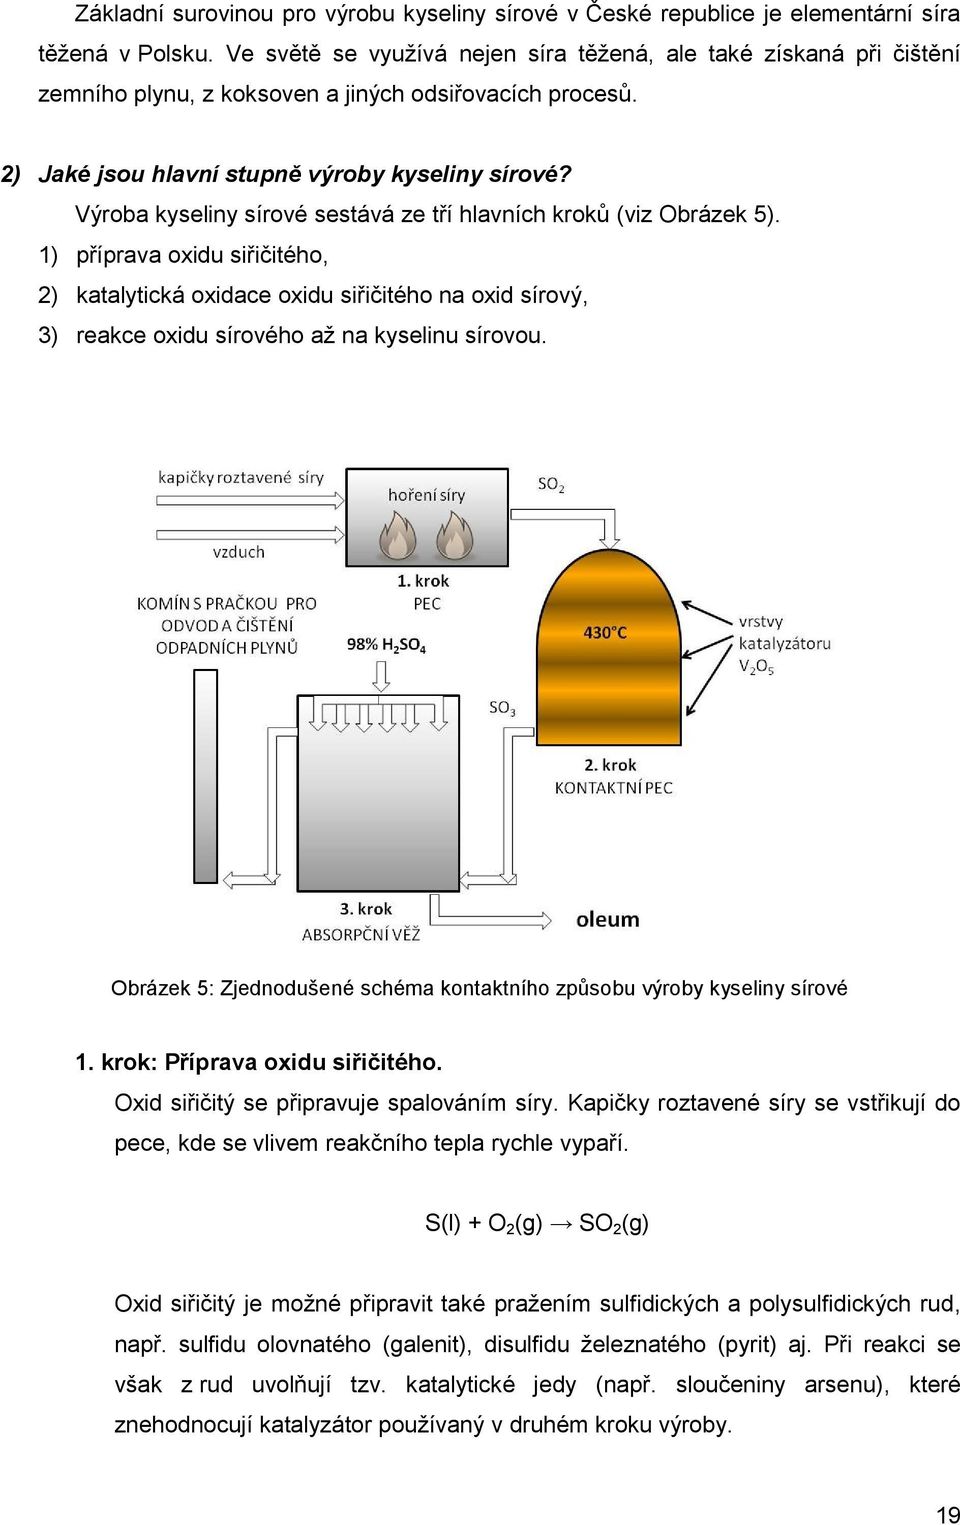 Výroba kyseliny sírové sestává ze tří hlavních kroků (viz Obrázek 5).